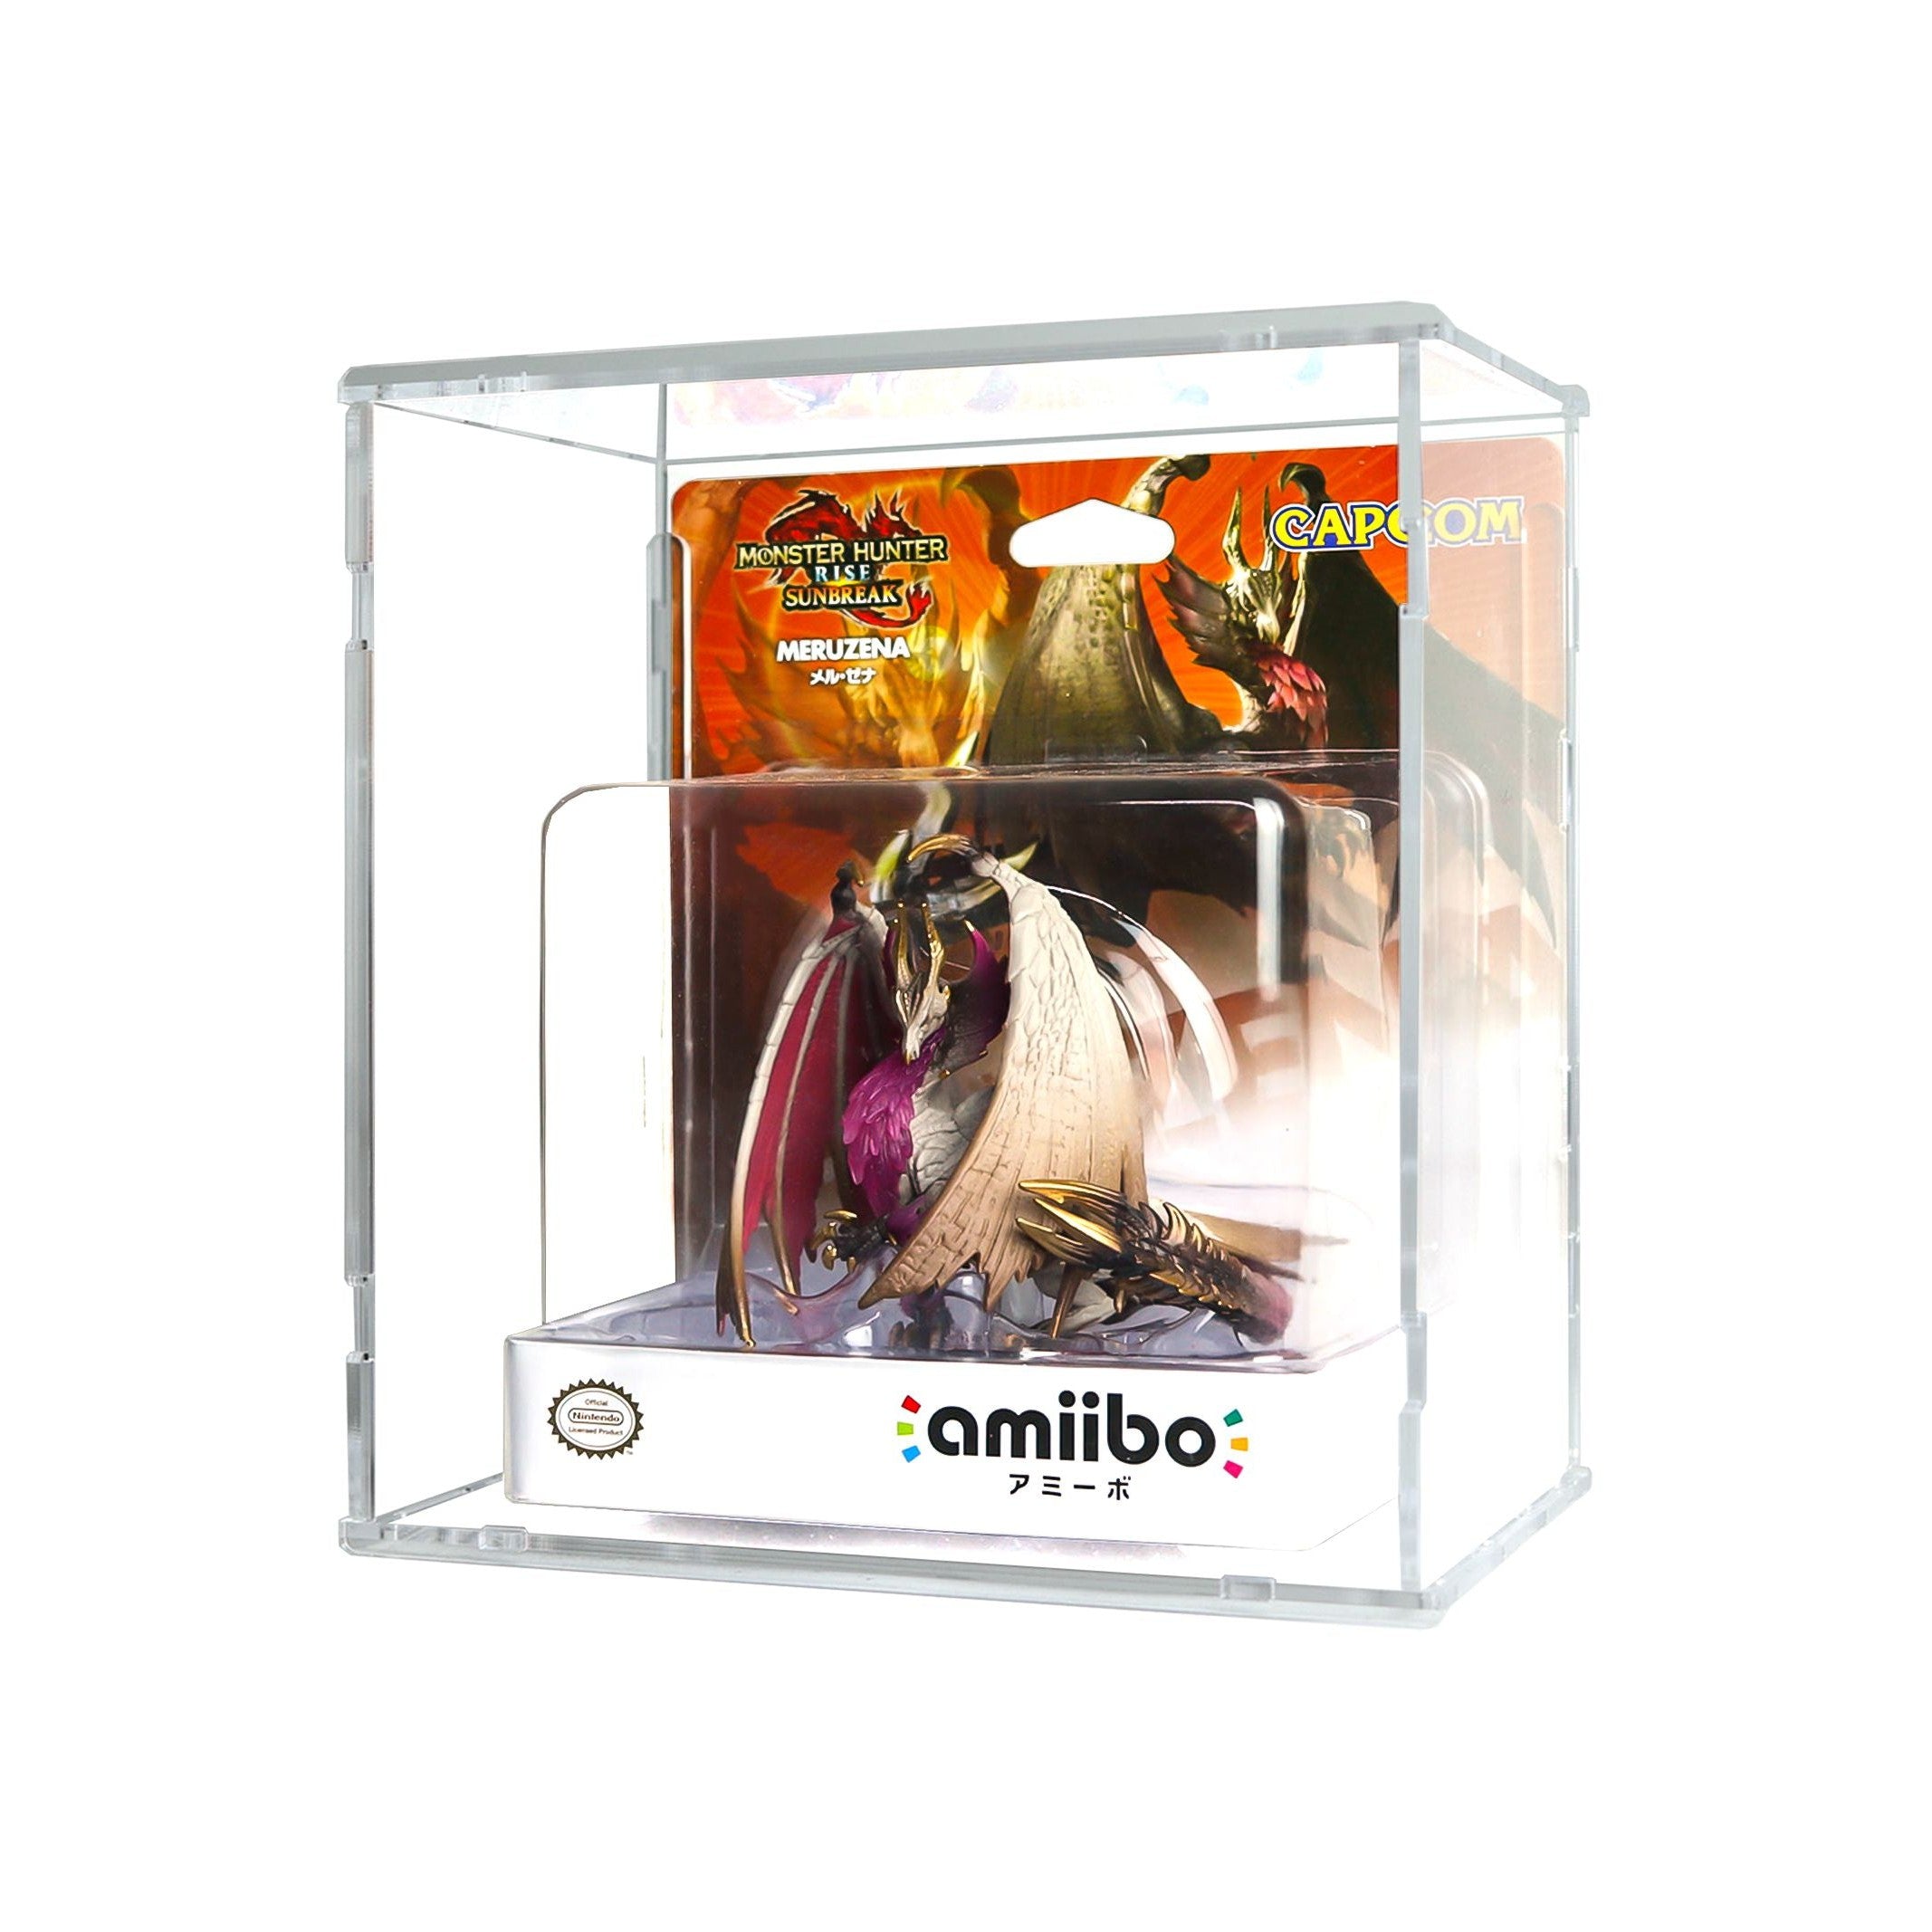 Protector para Amiibo™ Meruzena-acrilico-exhibidor-caja-case-Decolecto